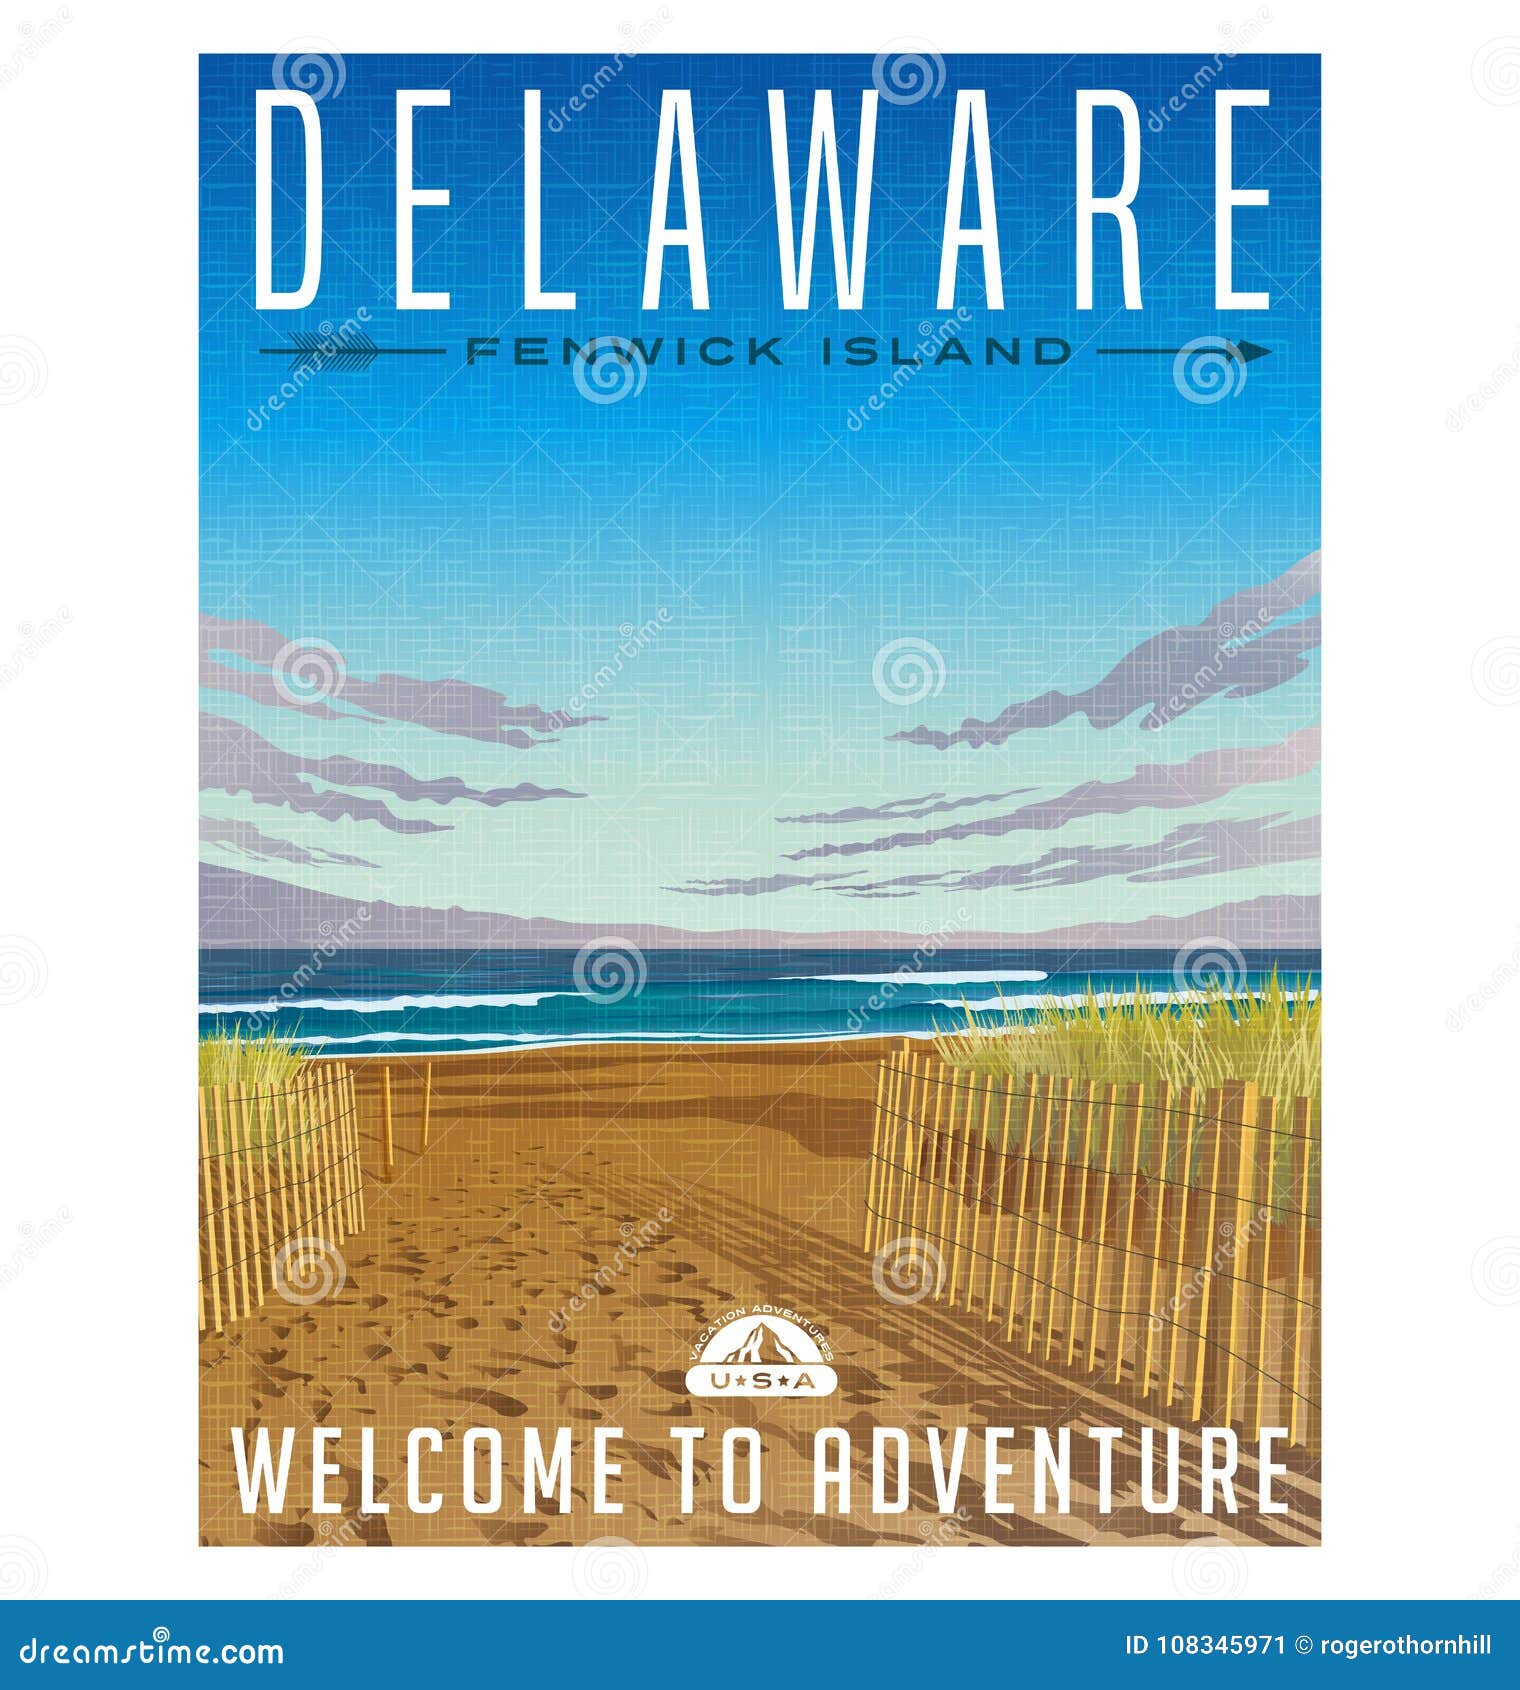 delaware travel poster of serene beach and atlantic ocean.